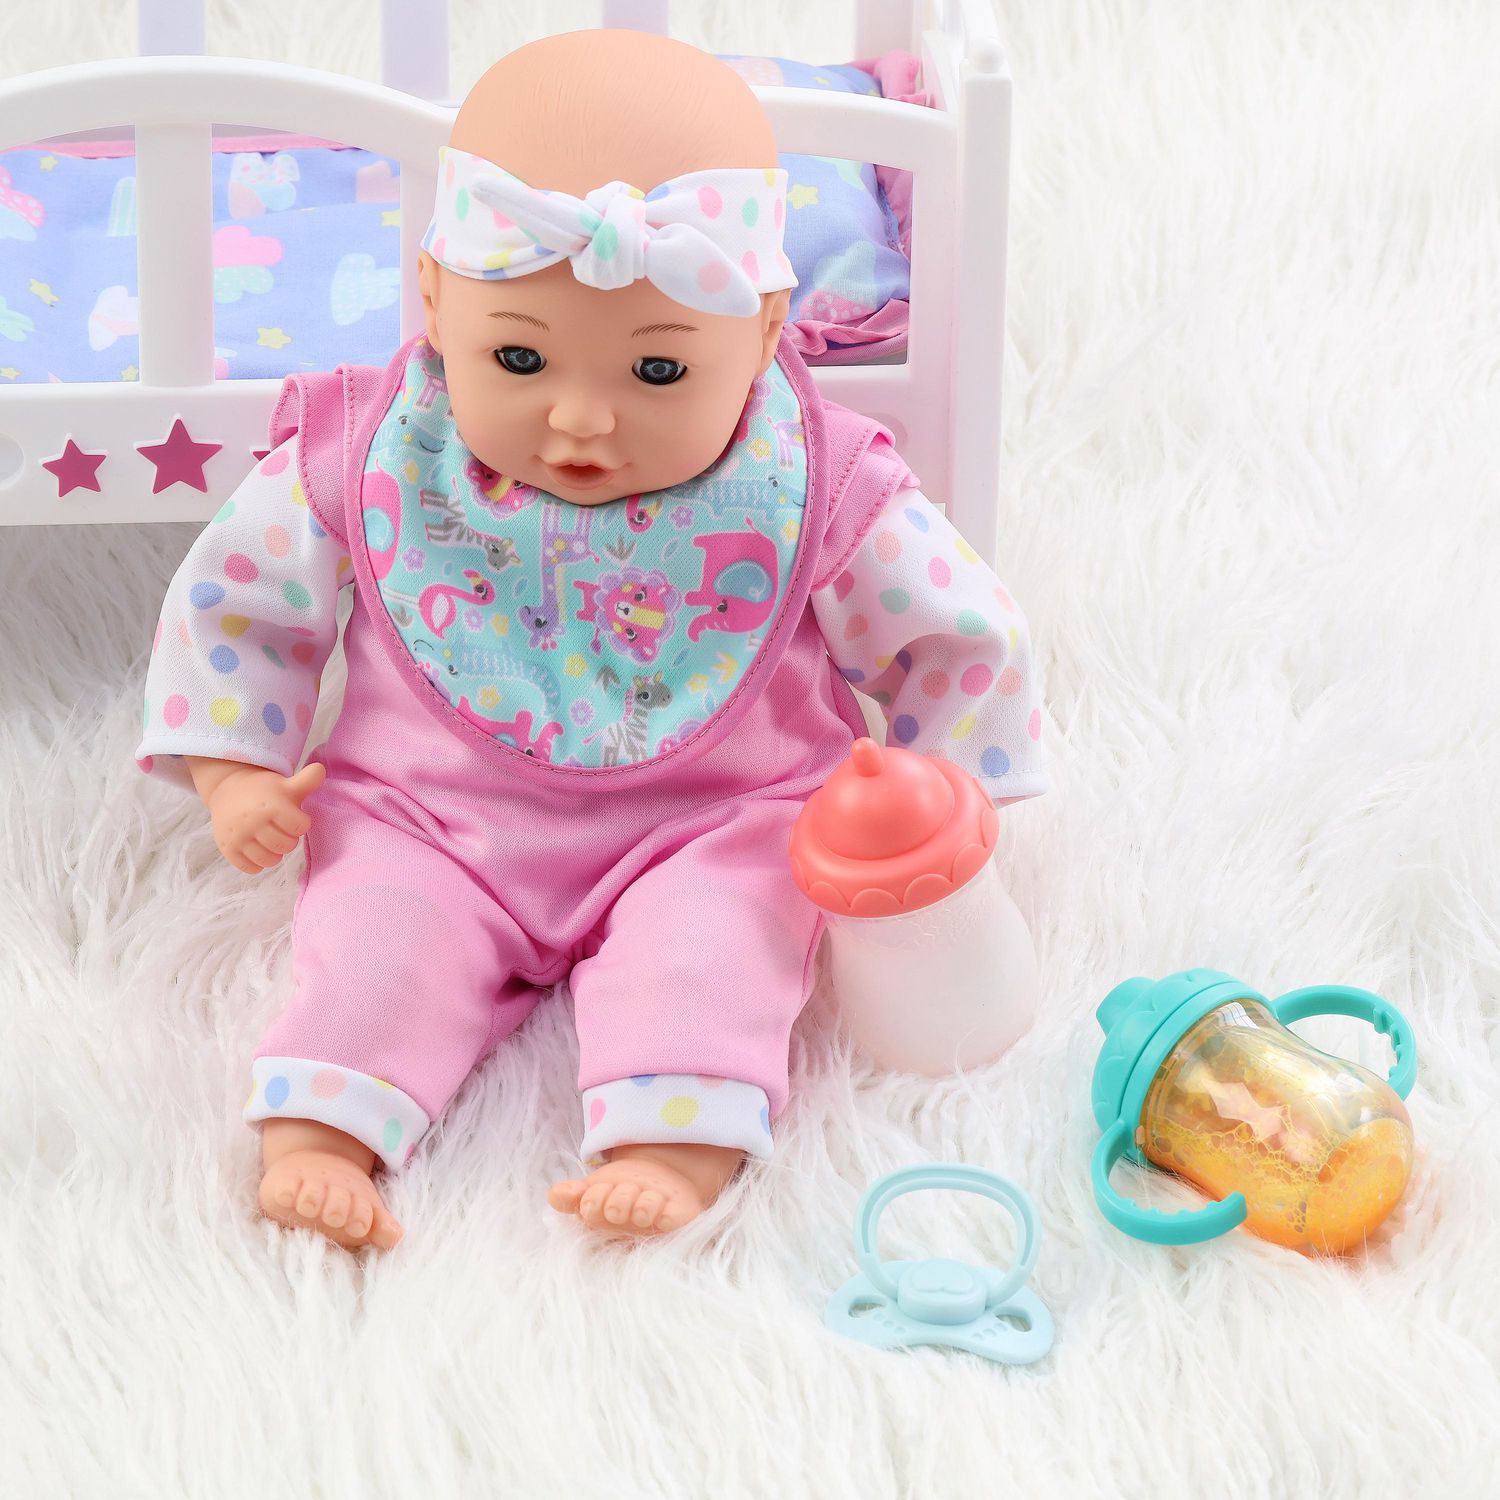 Accessoires de poupée bébé nouveau-né, bouteille de lait magique